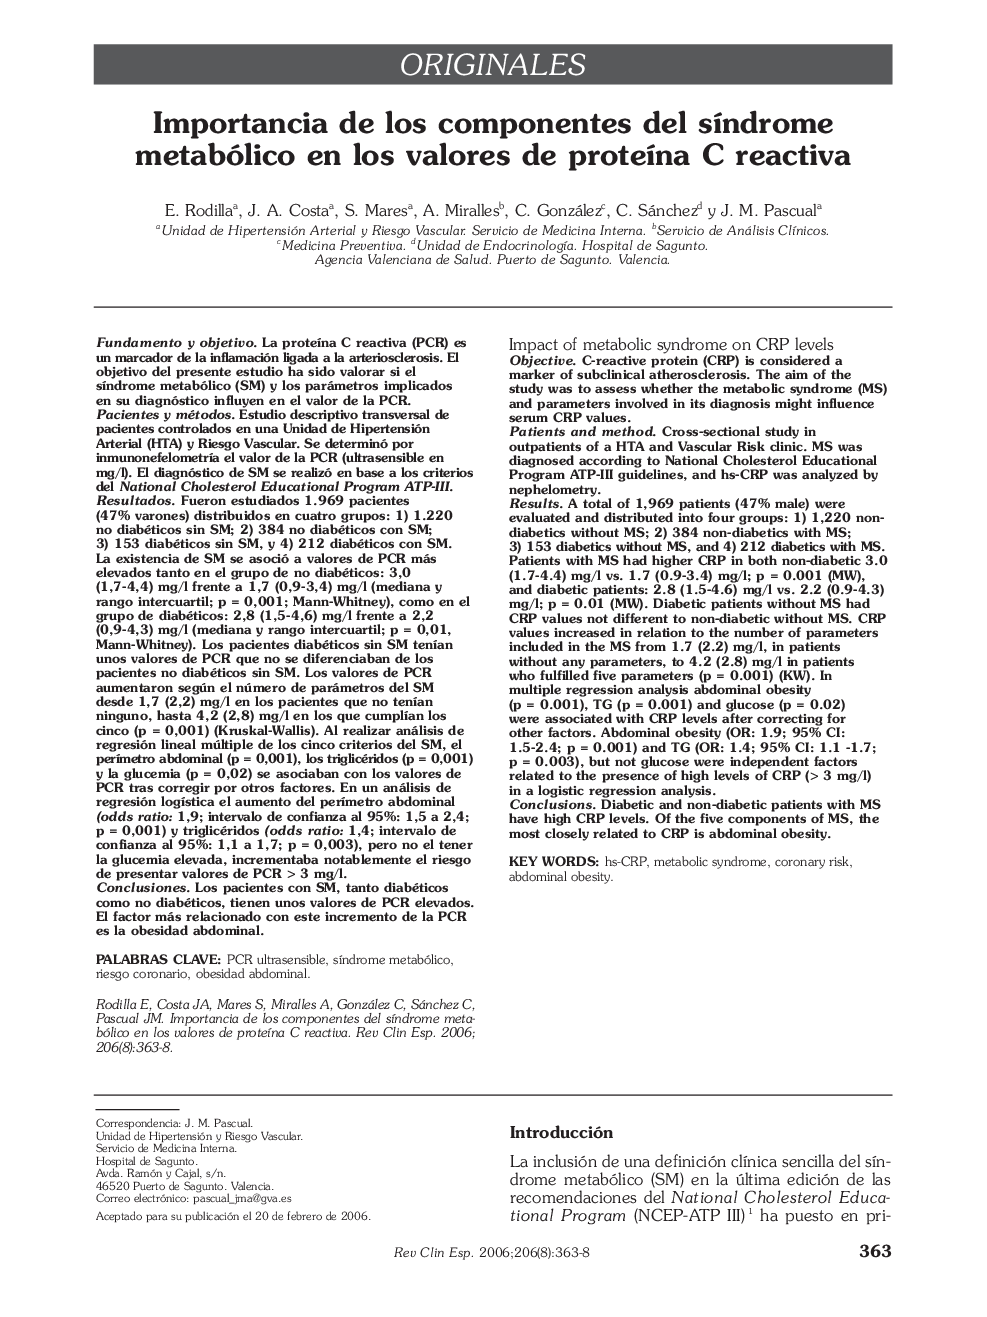 OriginalesImportancia de los componentes del sÃ­ndrome metabólico en los valores de proteÃ­na C reactivaImpact of metabolic syndrome on CRP levels